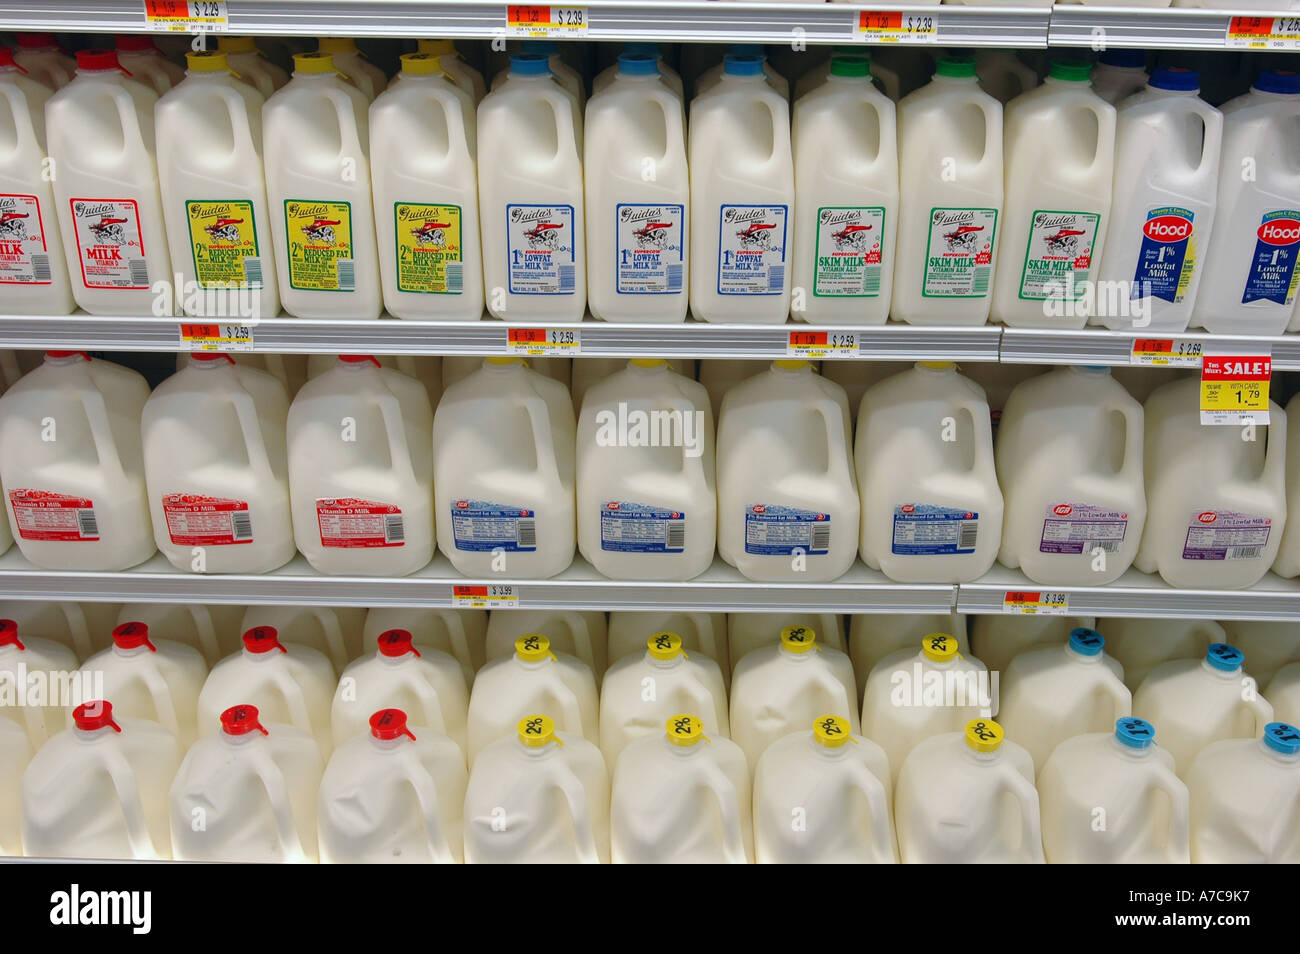 Milk store immagini e fotografie stock ad alta risoluzione - Alamy